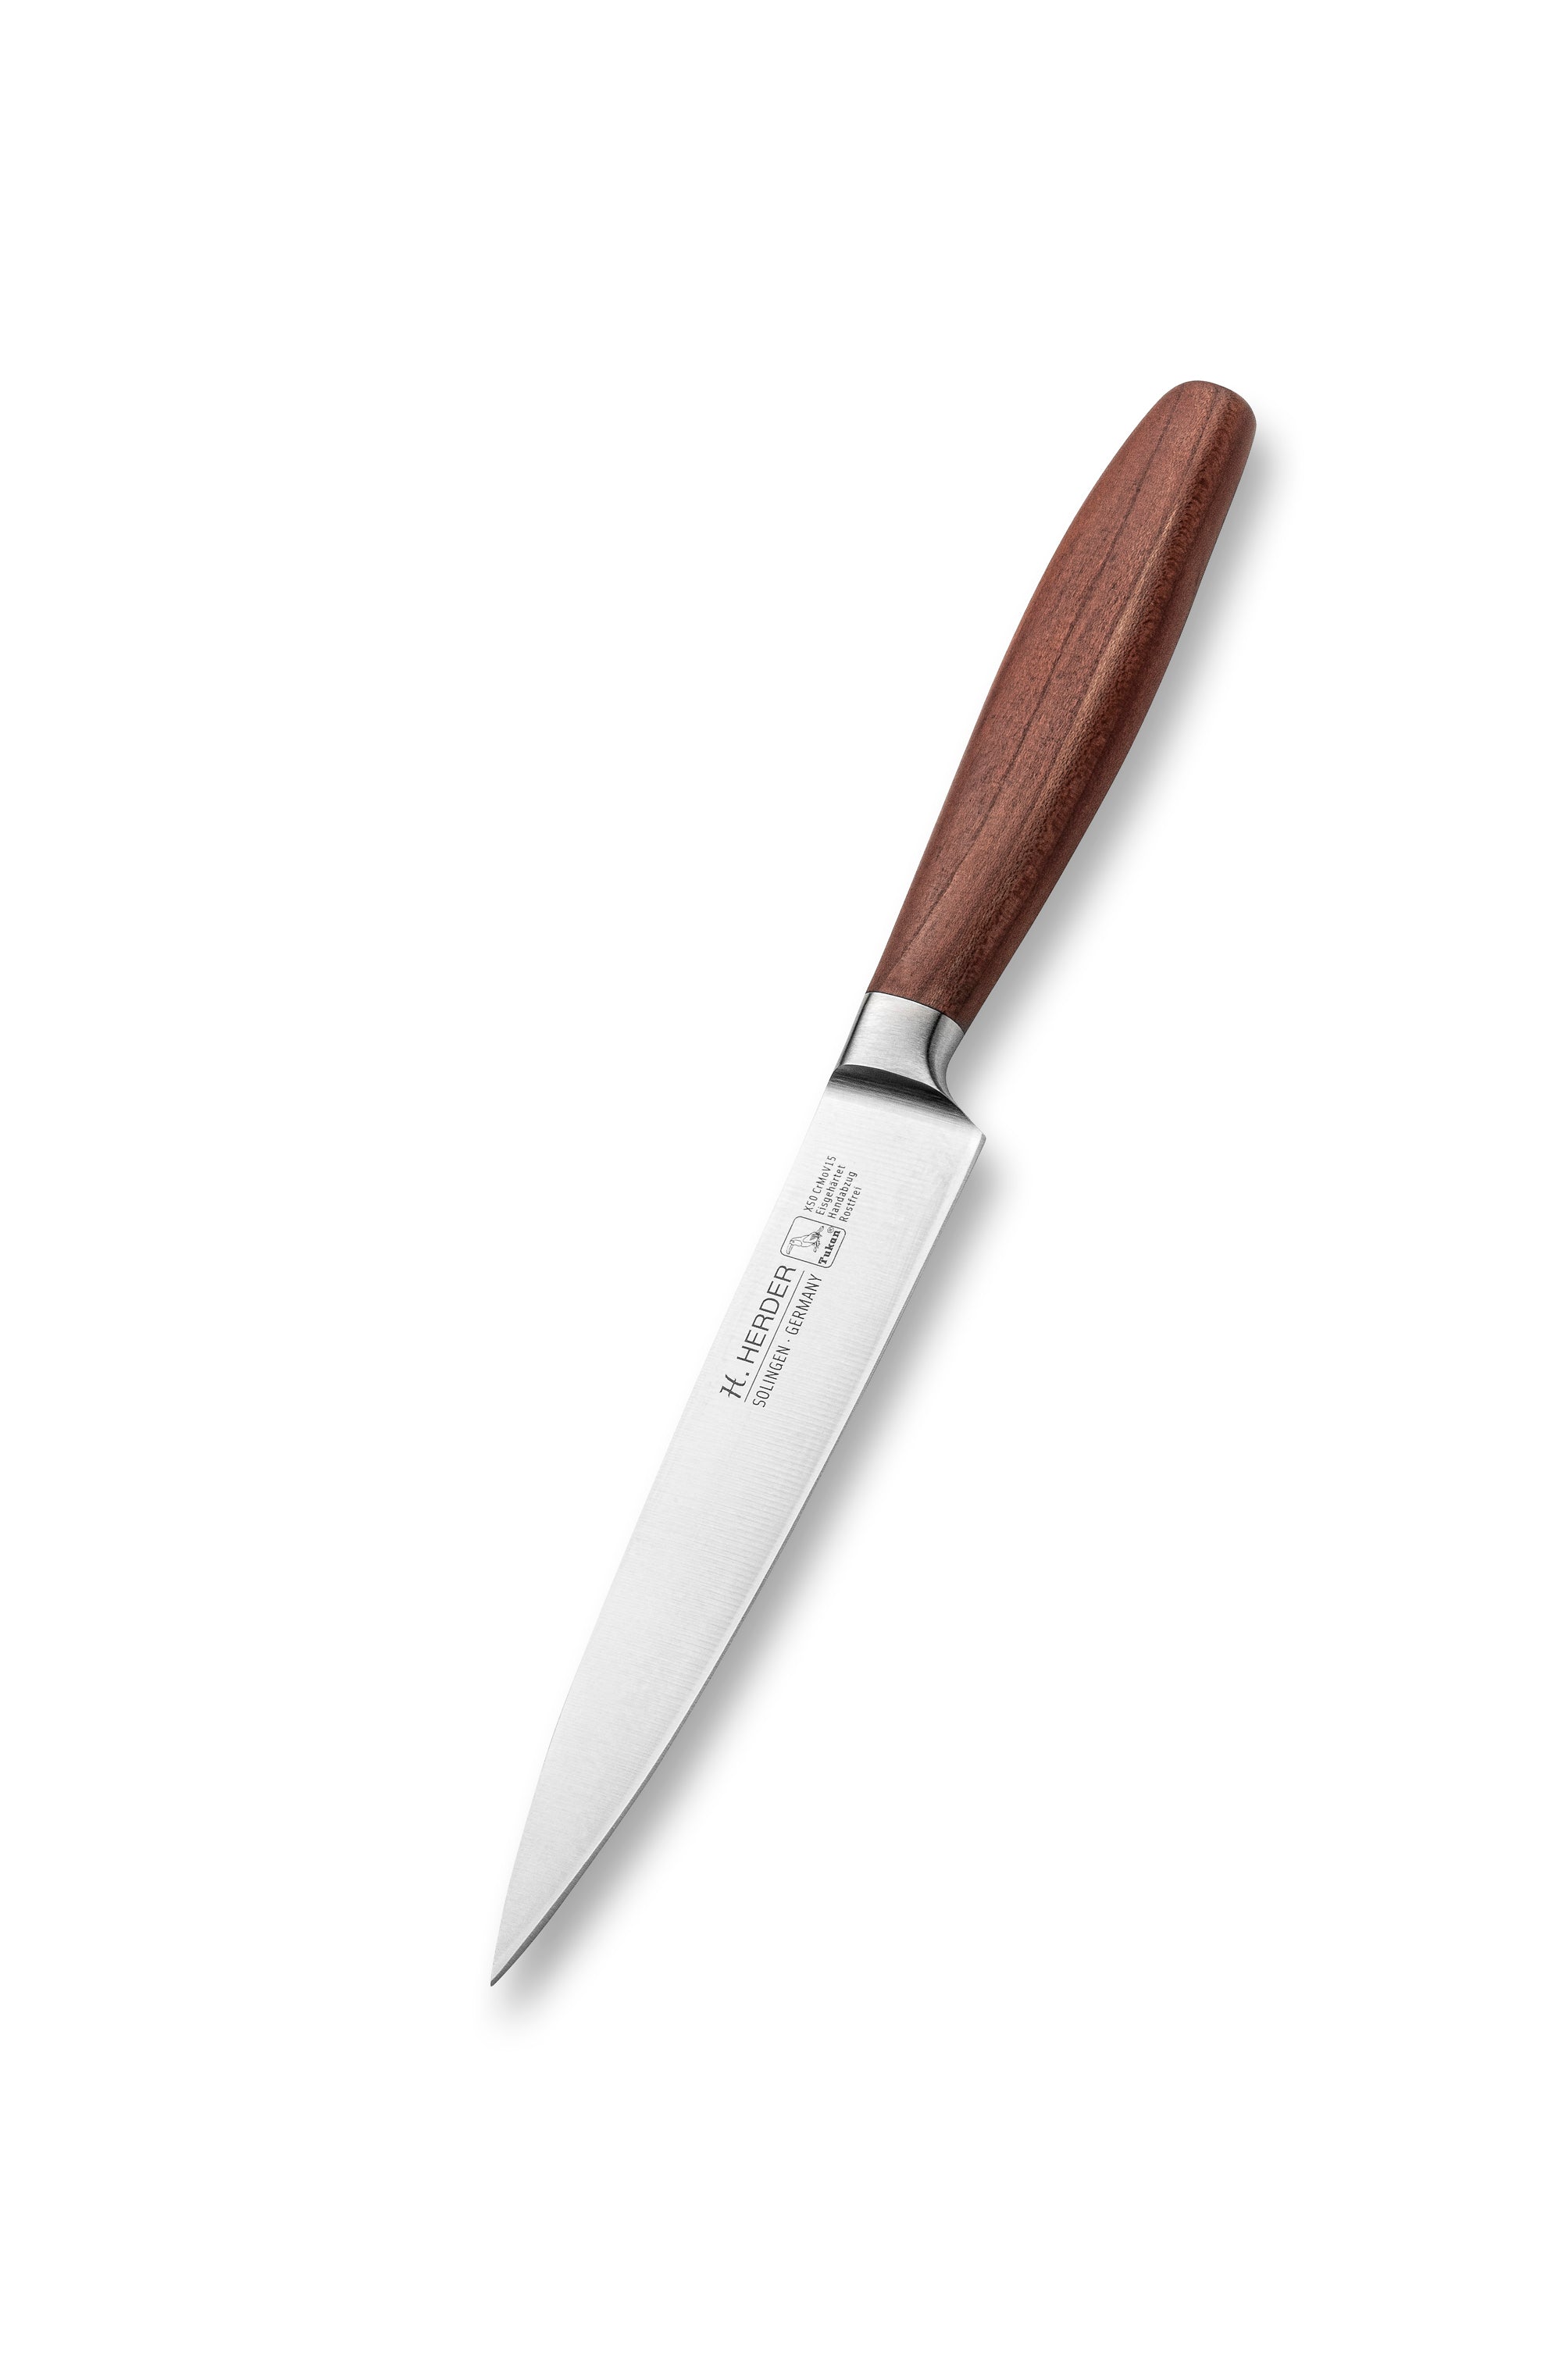 Couteau à jambon Eterno, bois de prunier, longueur de lame 16cm, forgé